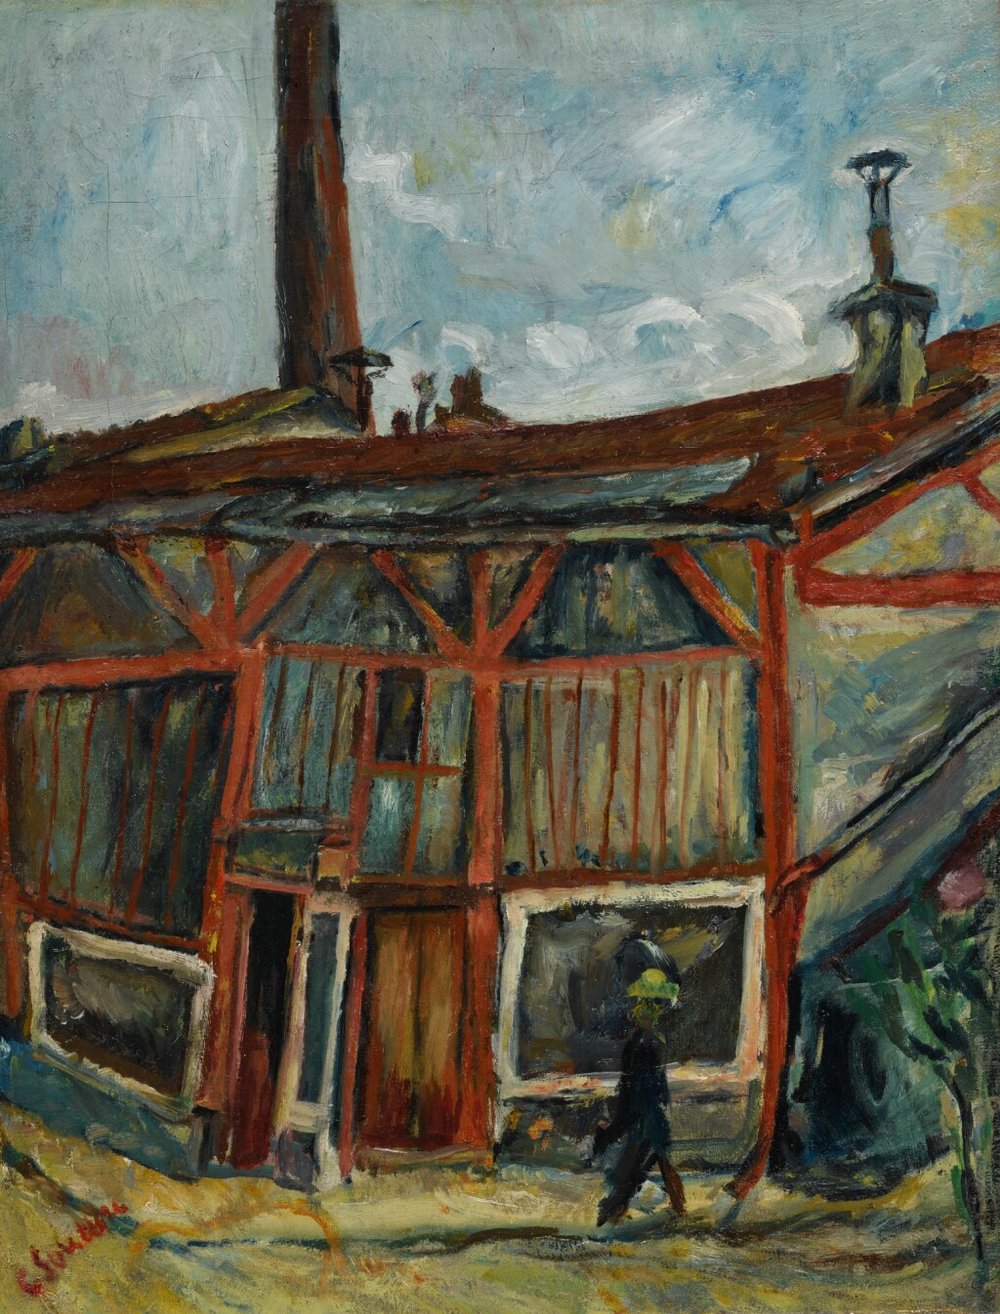 Chaim Soutine, Atelier at the Cité Falguière, 1915-1916